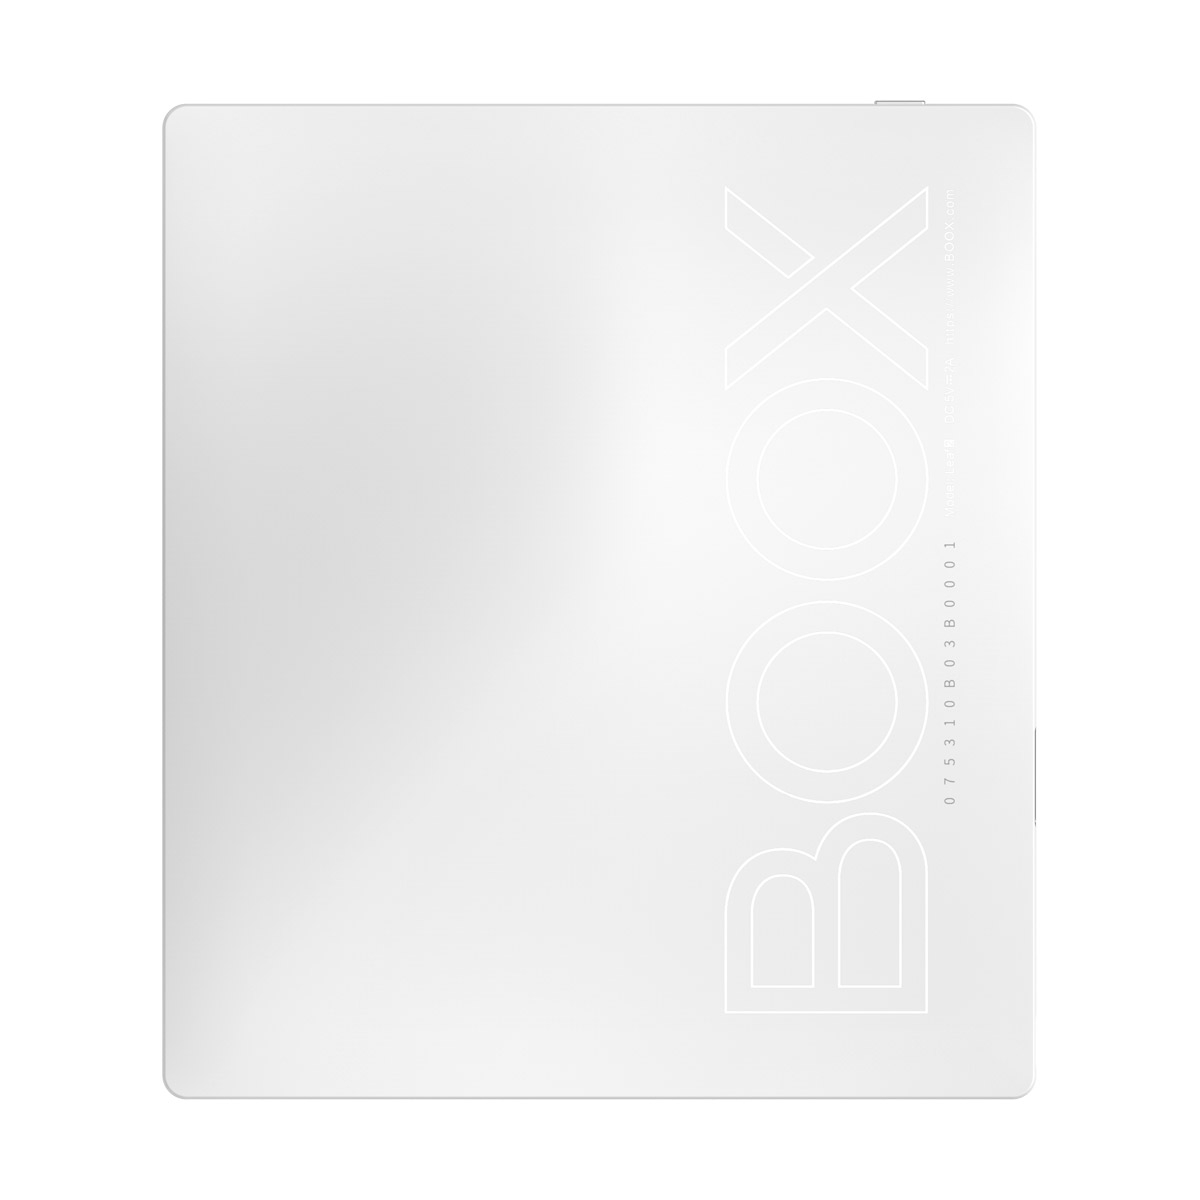 Ultralekki czytnik ebooków Onyx Boox Leaf 2 - najlepszy w podróży